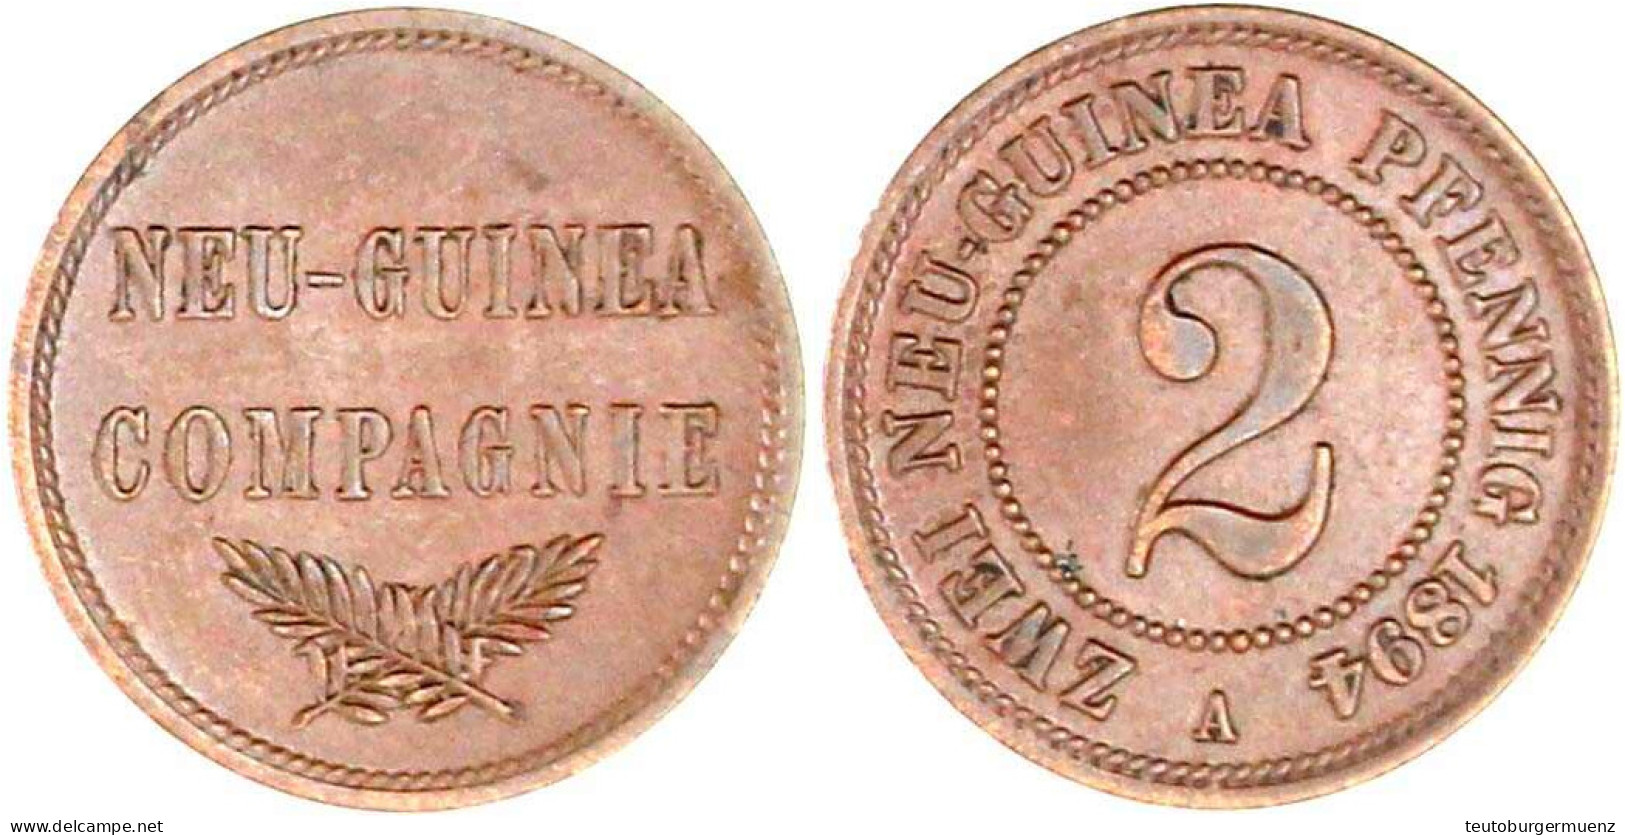 2 Neuguinea-Pfennig 1894 A. Vorzüglich. Jaeger 702. - Duits Nieuw-Guinea